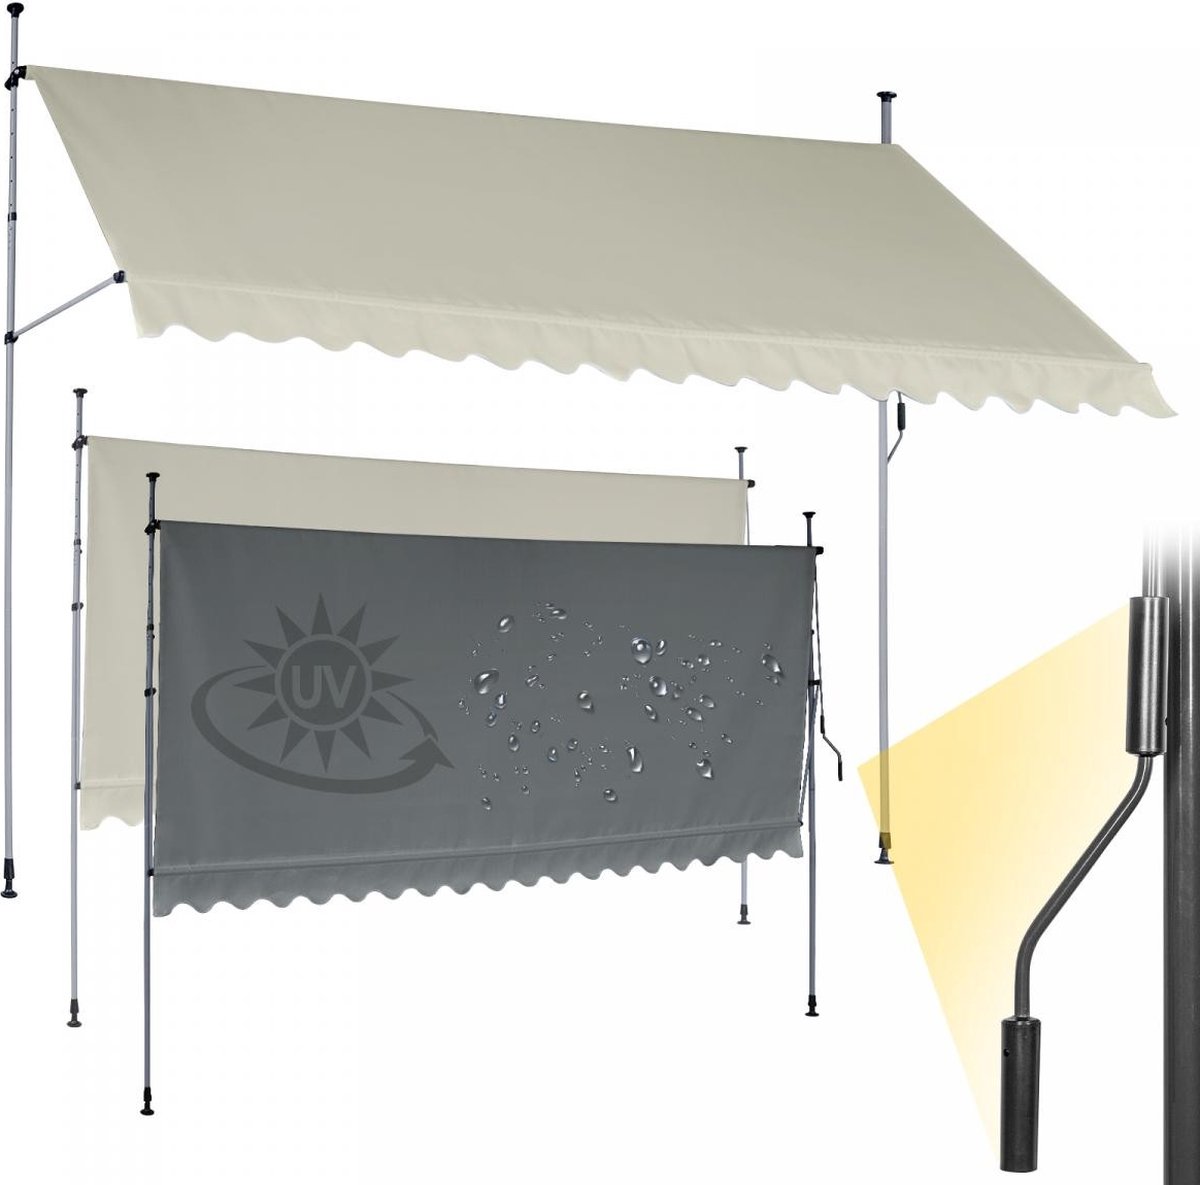 Jago - In Hoogte Verstelbare Luifel met UV-bescherming en Slinger - 300x80 cm - Waterafstotend voor op het Balkon of Terras - Zonbescherming - Zonnescherm - Terrasluifel - Beige